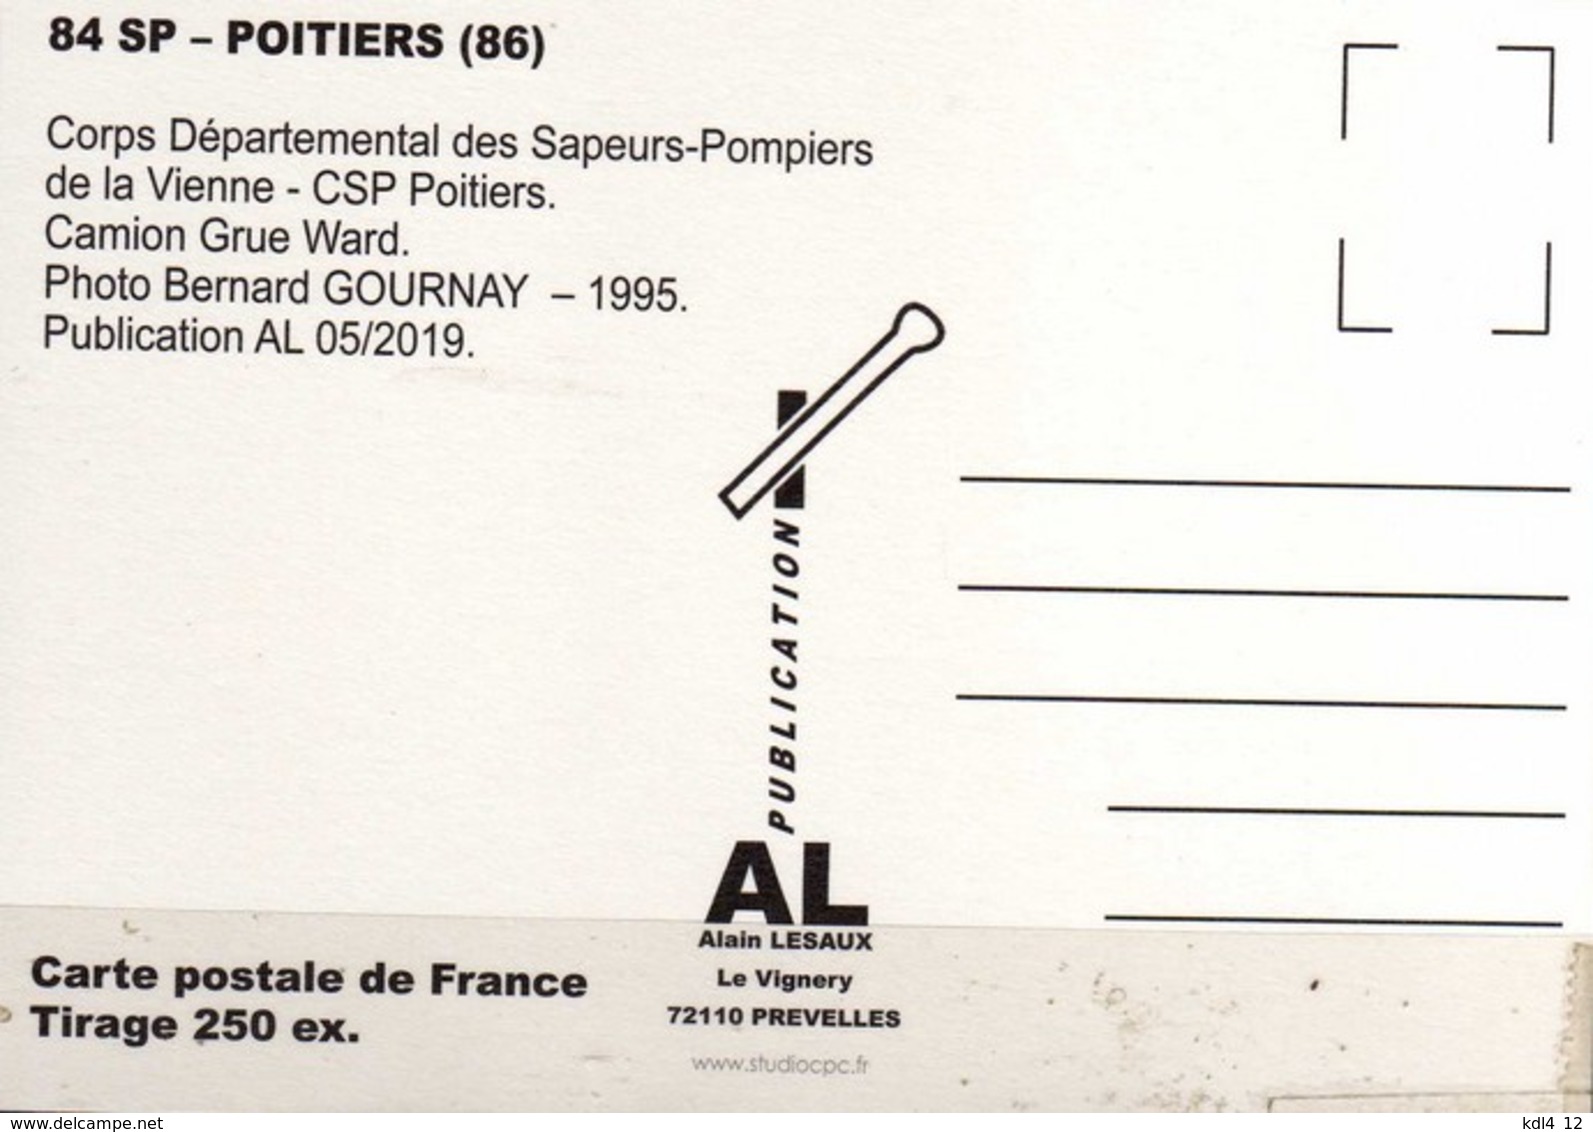 AL - Lot de 6 cartes postales modernes - Véhicules des Sapeurs-Pompiers de France - 80 SP à 85 SP